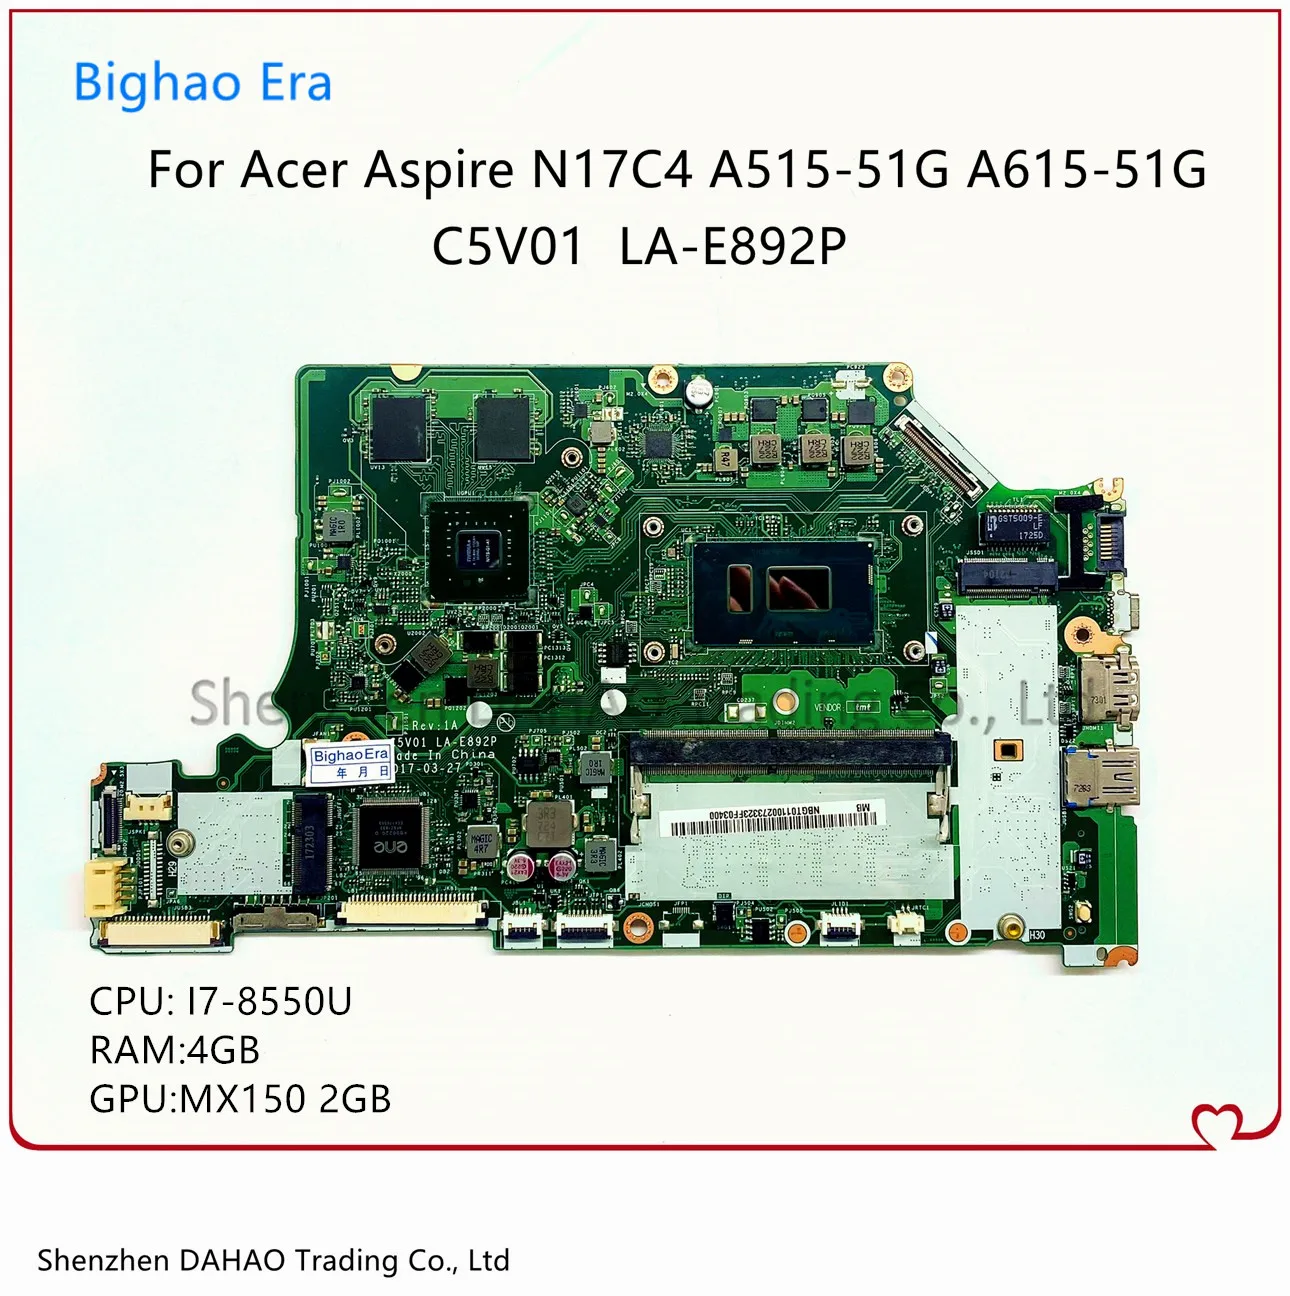 

Материнская плата для ноутбука ACER Aspire A315-53G A515-51 A615-51, материнская плата C5V01 с A615-51G 4G-RAM MX150 2G-GPU